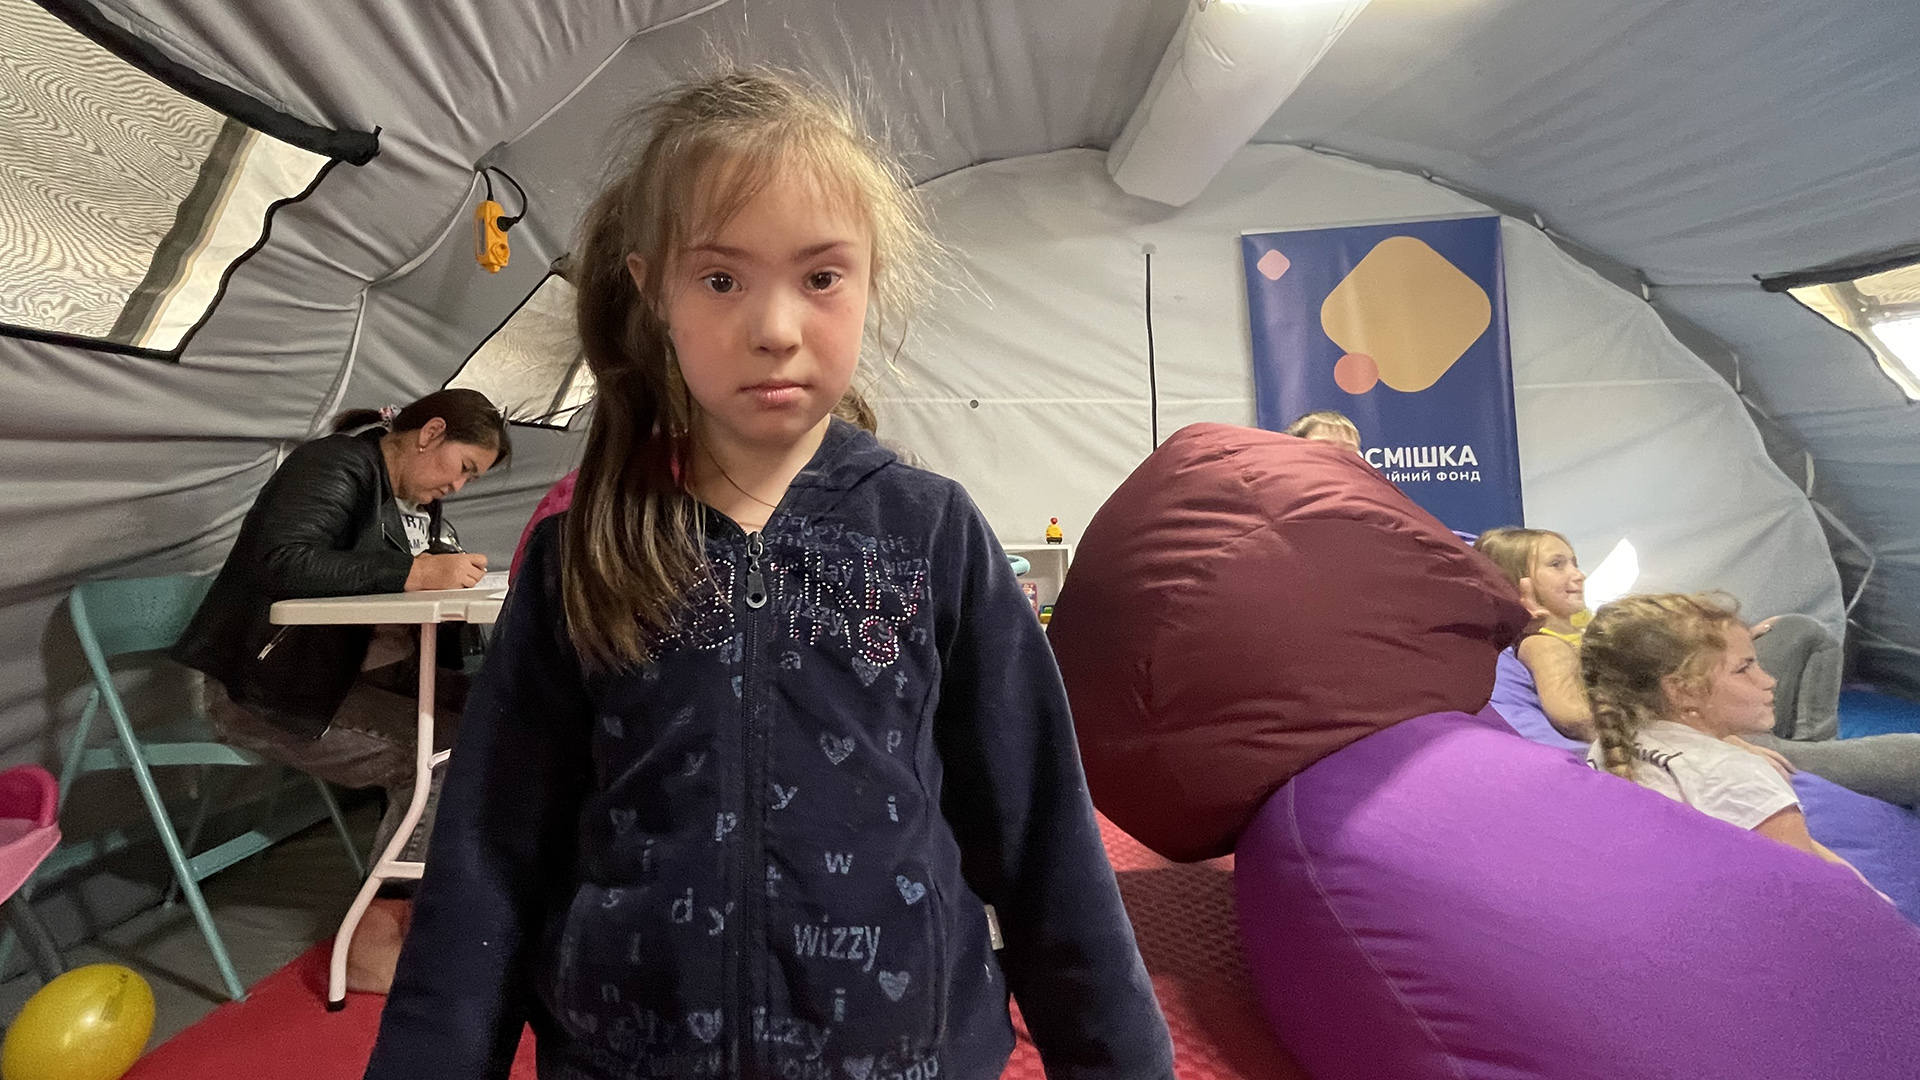 Kinder in  einem Zelt von "Save the children" | ARD-Aktuell/Andrea Beer